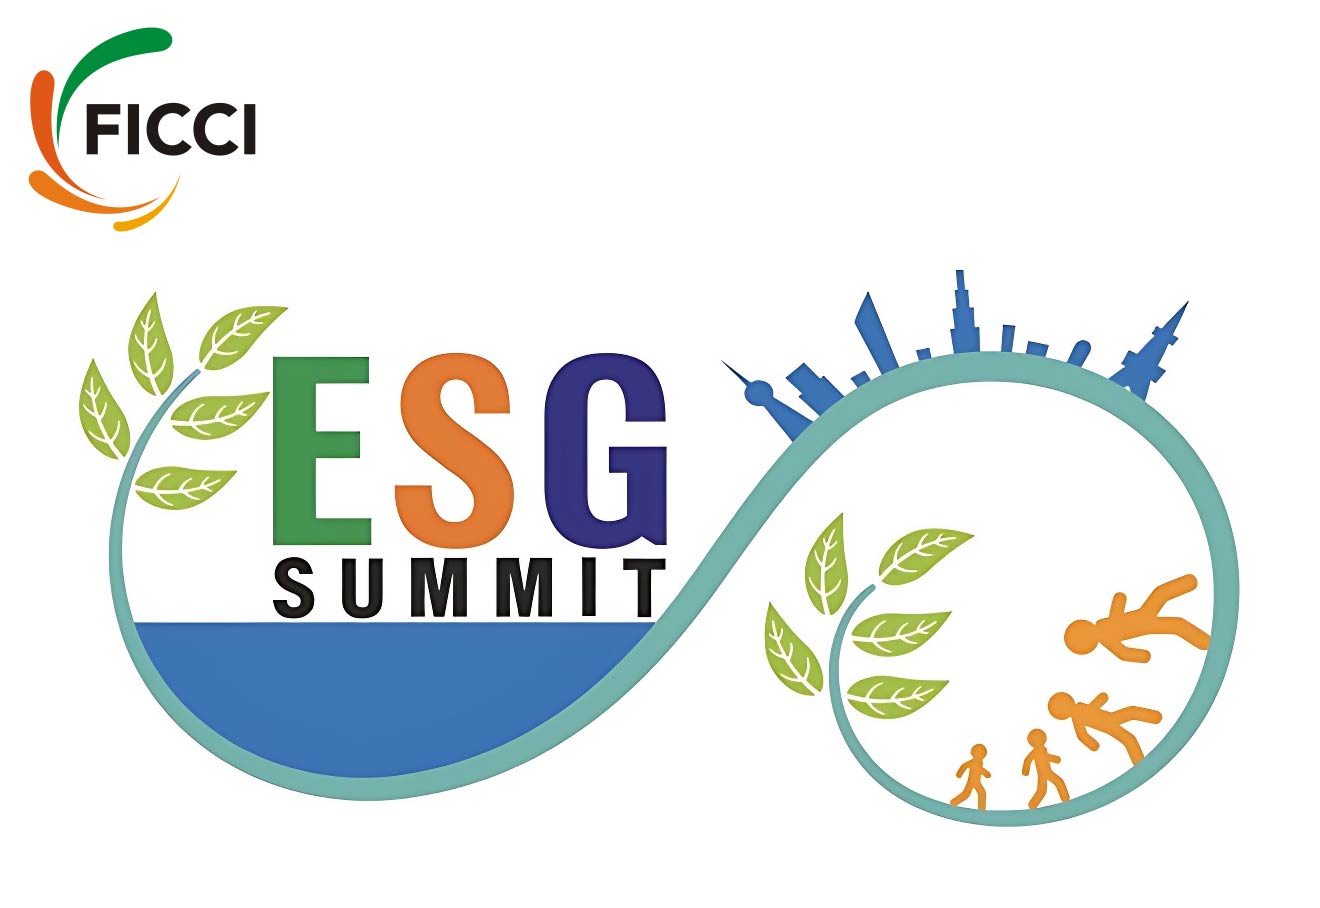 FICCI To Host ESG Summit In Mumbai On Oct 9